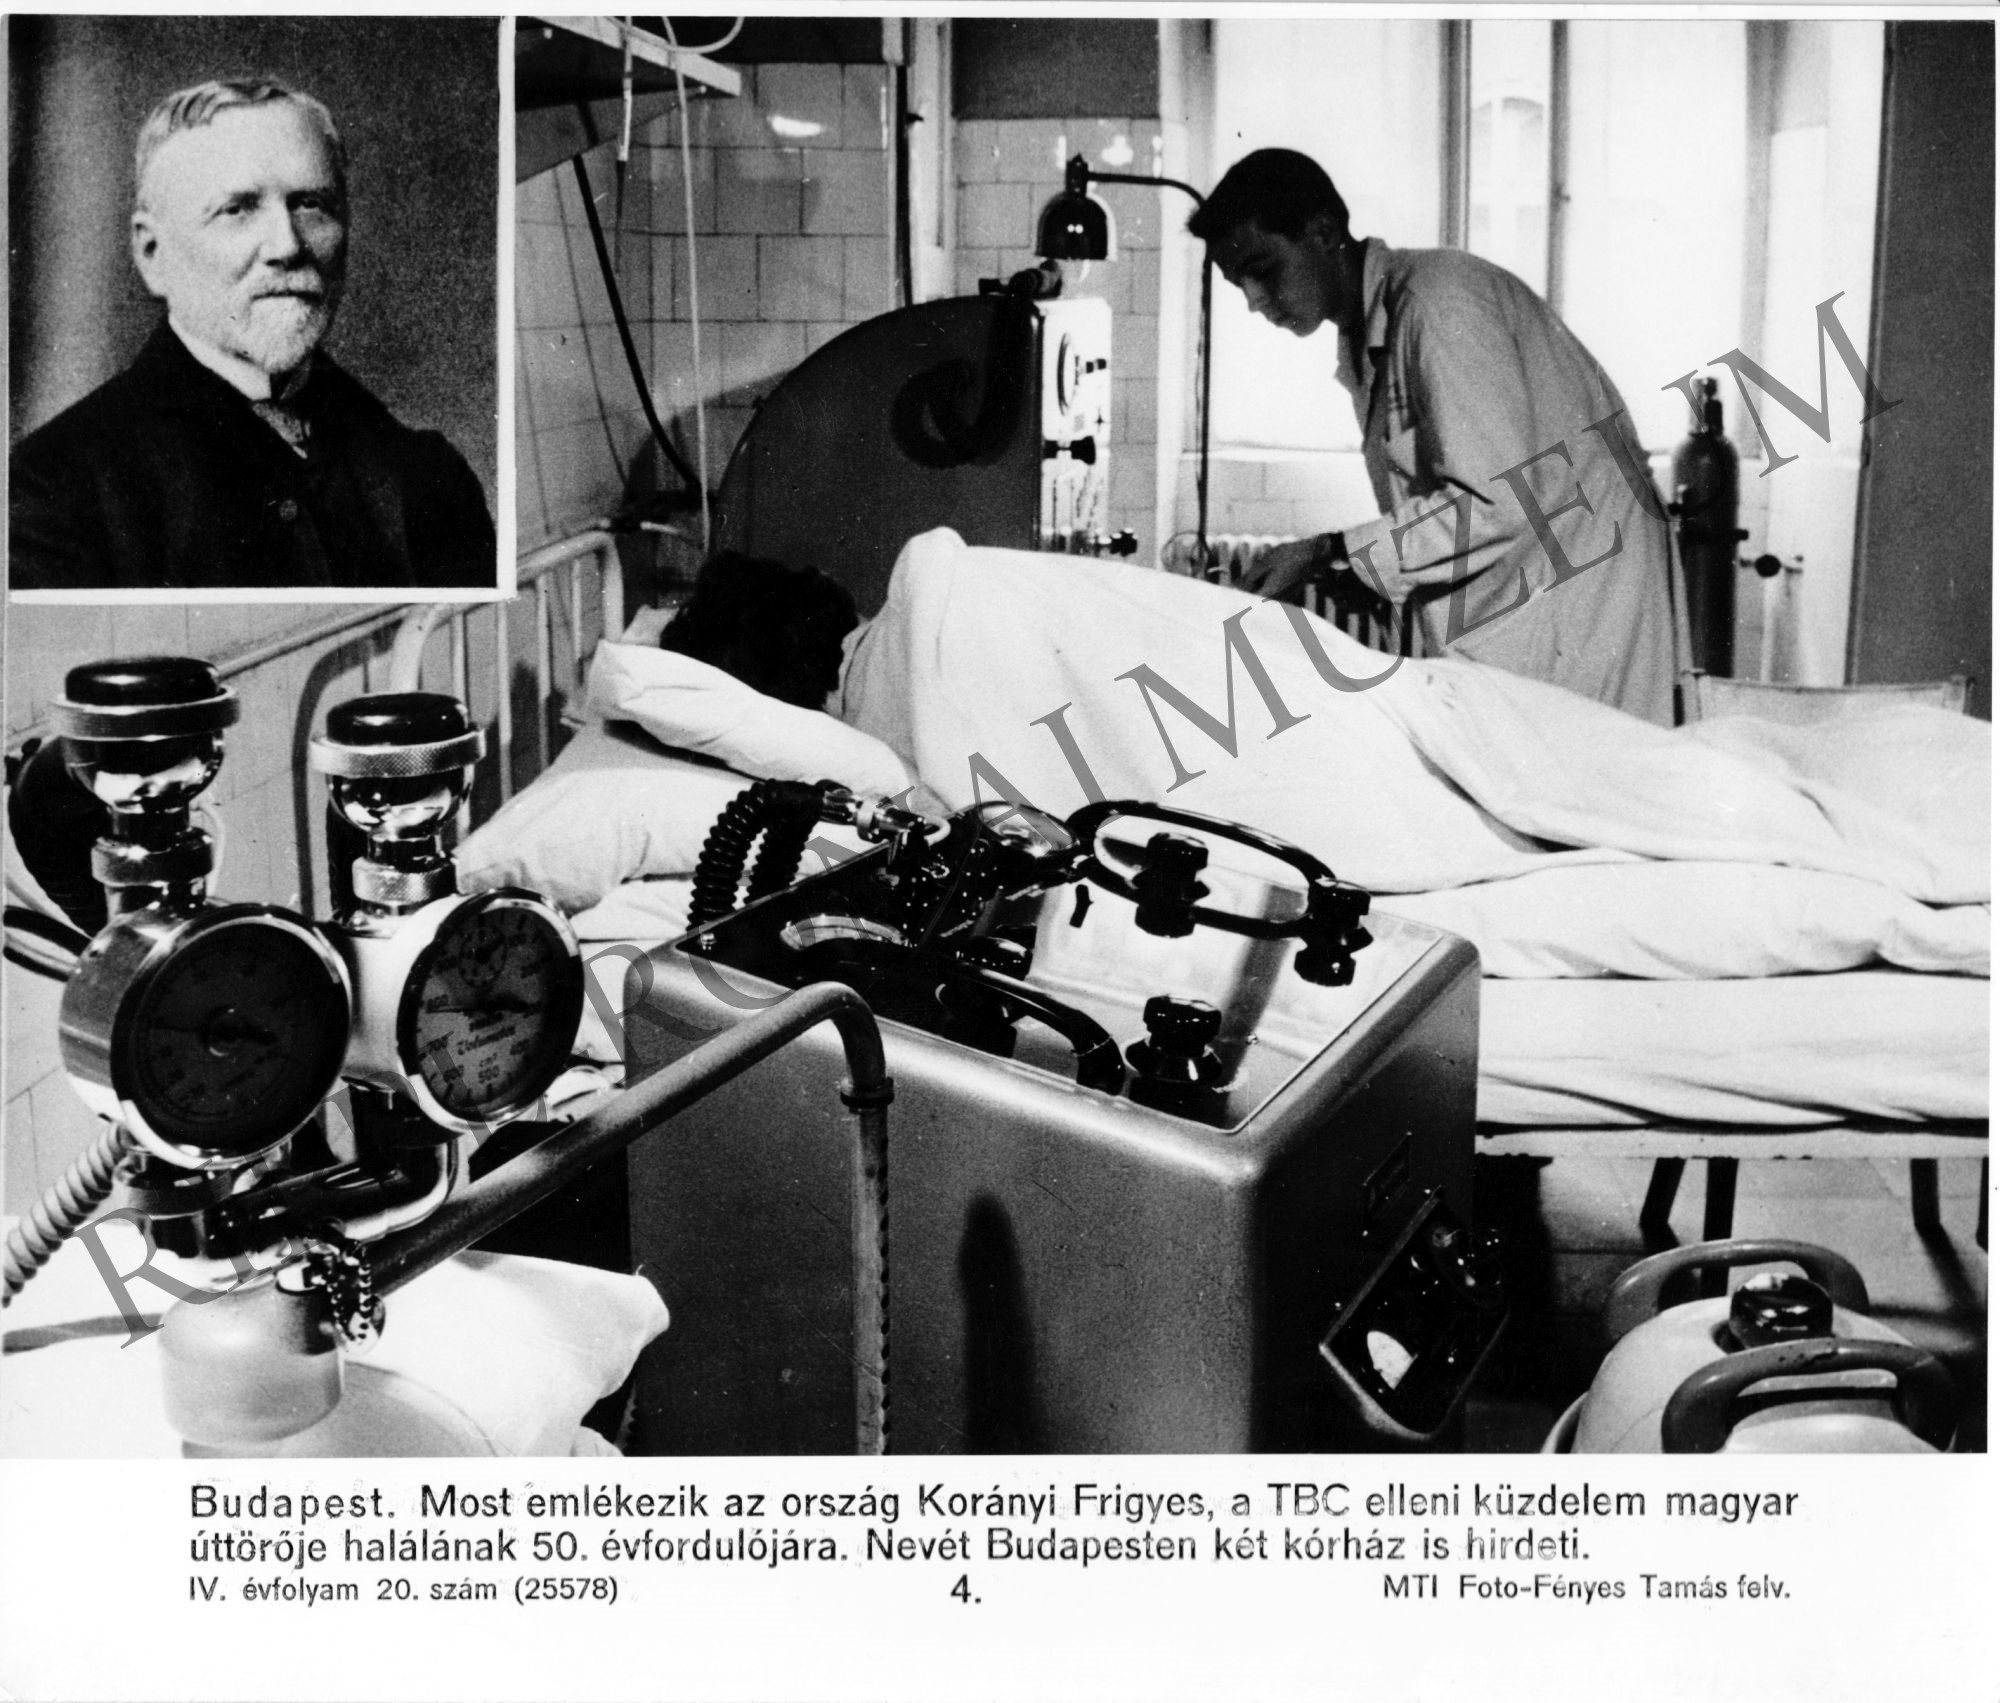 Egy kórterem beleseje, a bal sarokban Korányi Frigyes. A TBC ellenes küzdelem úttörője halálának 50. évfordulója alkamából készült fotó (Rippl-Rónai Múzeum CC BY-NC-SA)